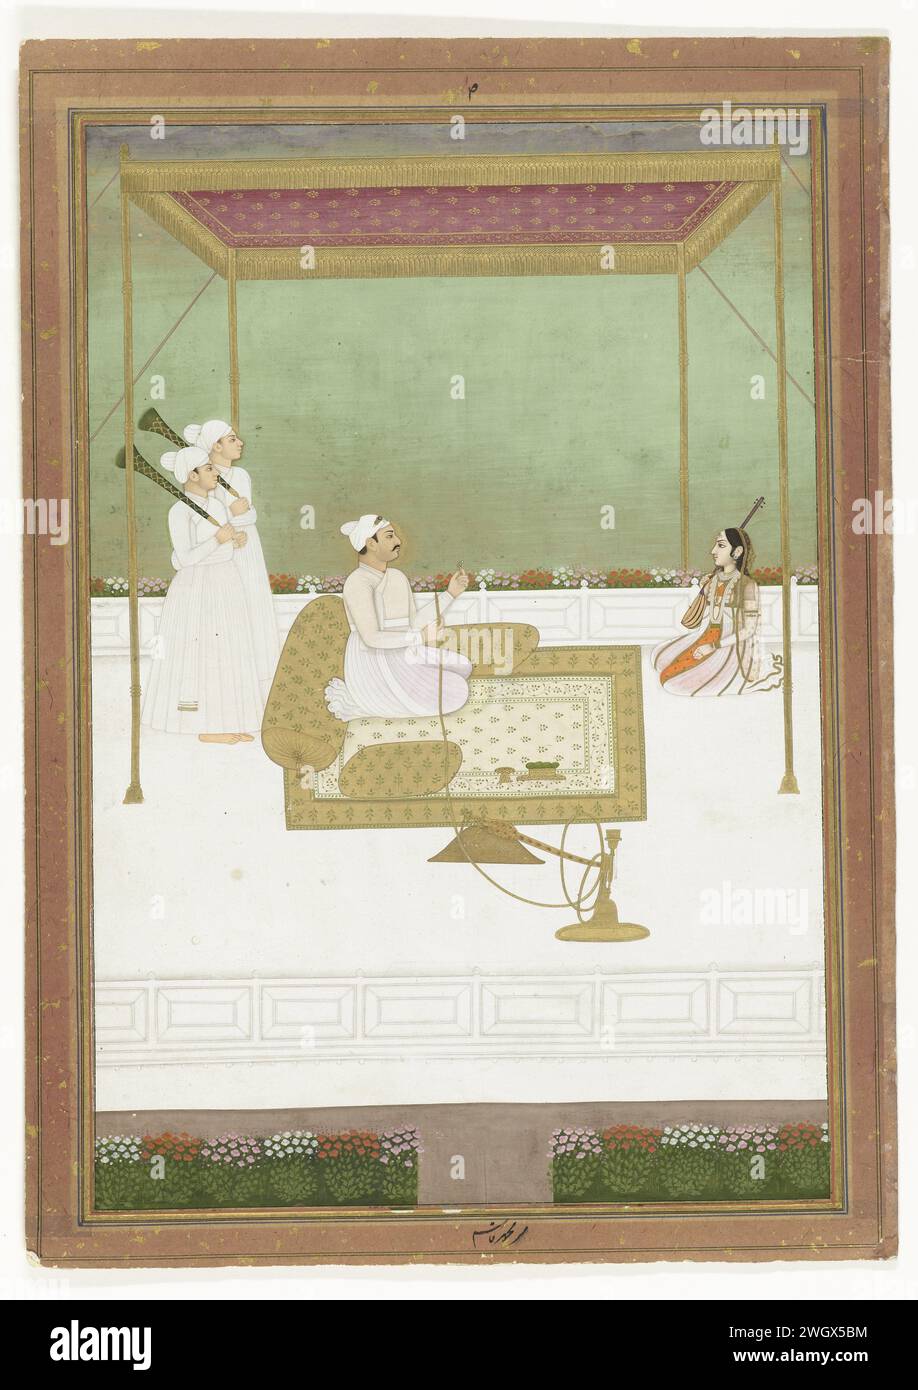 Nawab mir Qasim Ali Khan van Bengal, Anonym, ca. 1755 - ca. 1765 Indische Miniatur Nawab (Gouverneur) mir Qasim sitzt unter einem Baldachin, Wasserpfeife in der Hand, zwei Dienerinnen und ein Mädchen mit einem Musikinstrument. Murshidabad-Papier. Deckfarbe. Gouache (Farbe) Pinsel historische Personen. Herrscher, souverän. Wasserpfeife, Wasserpfeife, Narghil. Streichinstrumente (gerupft) Bengalen Stockfoto